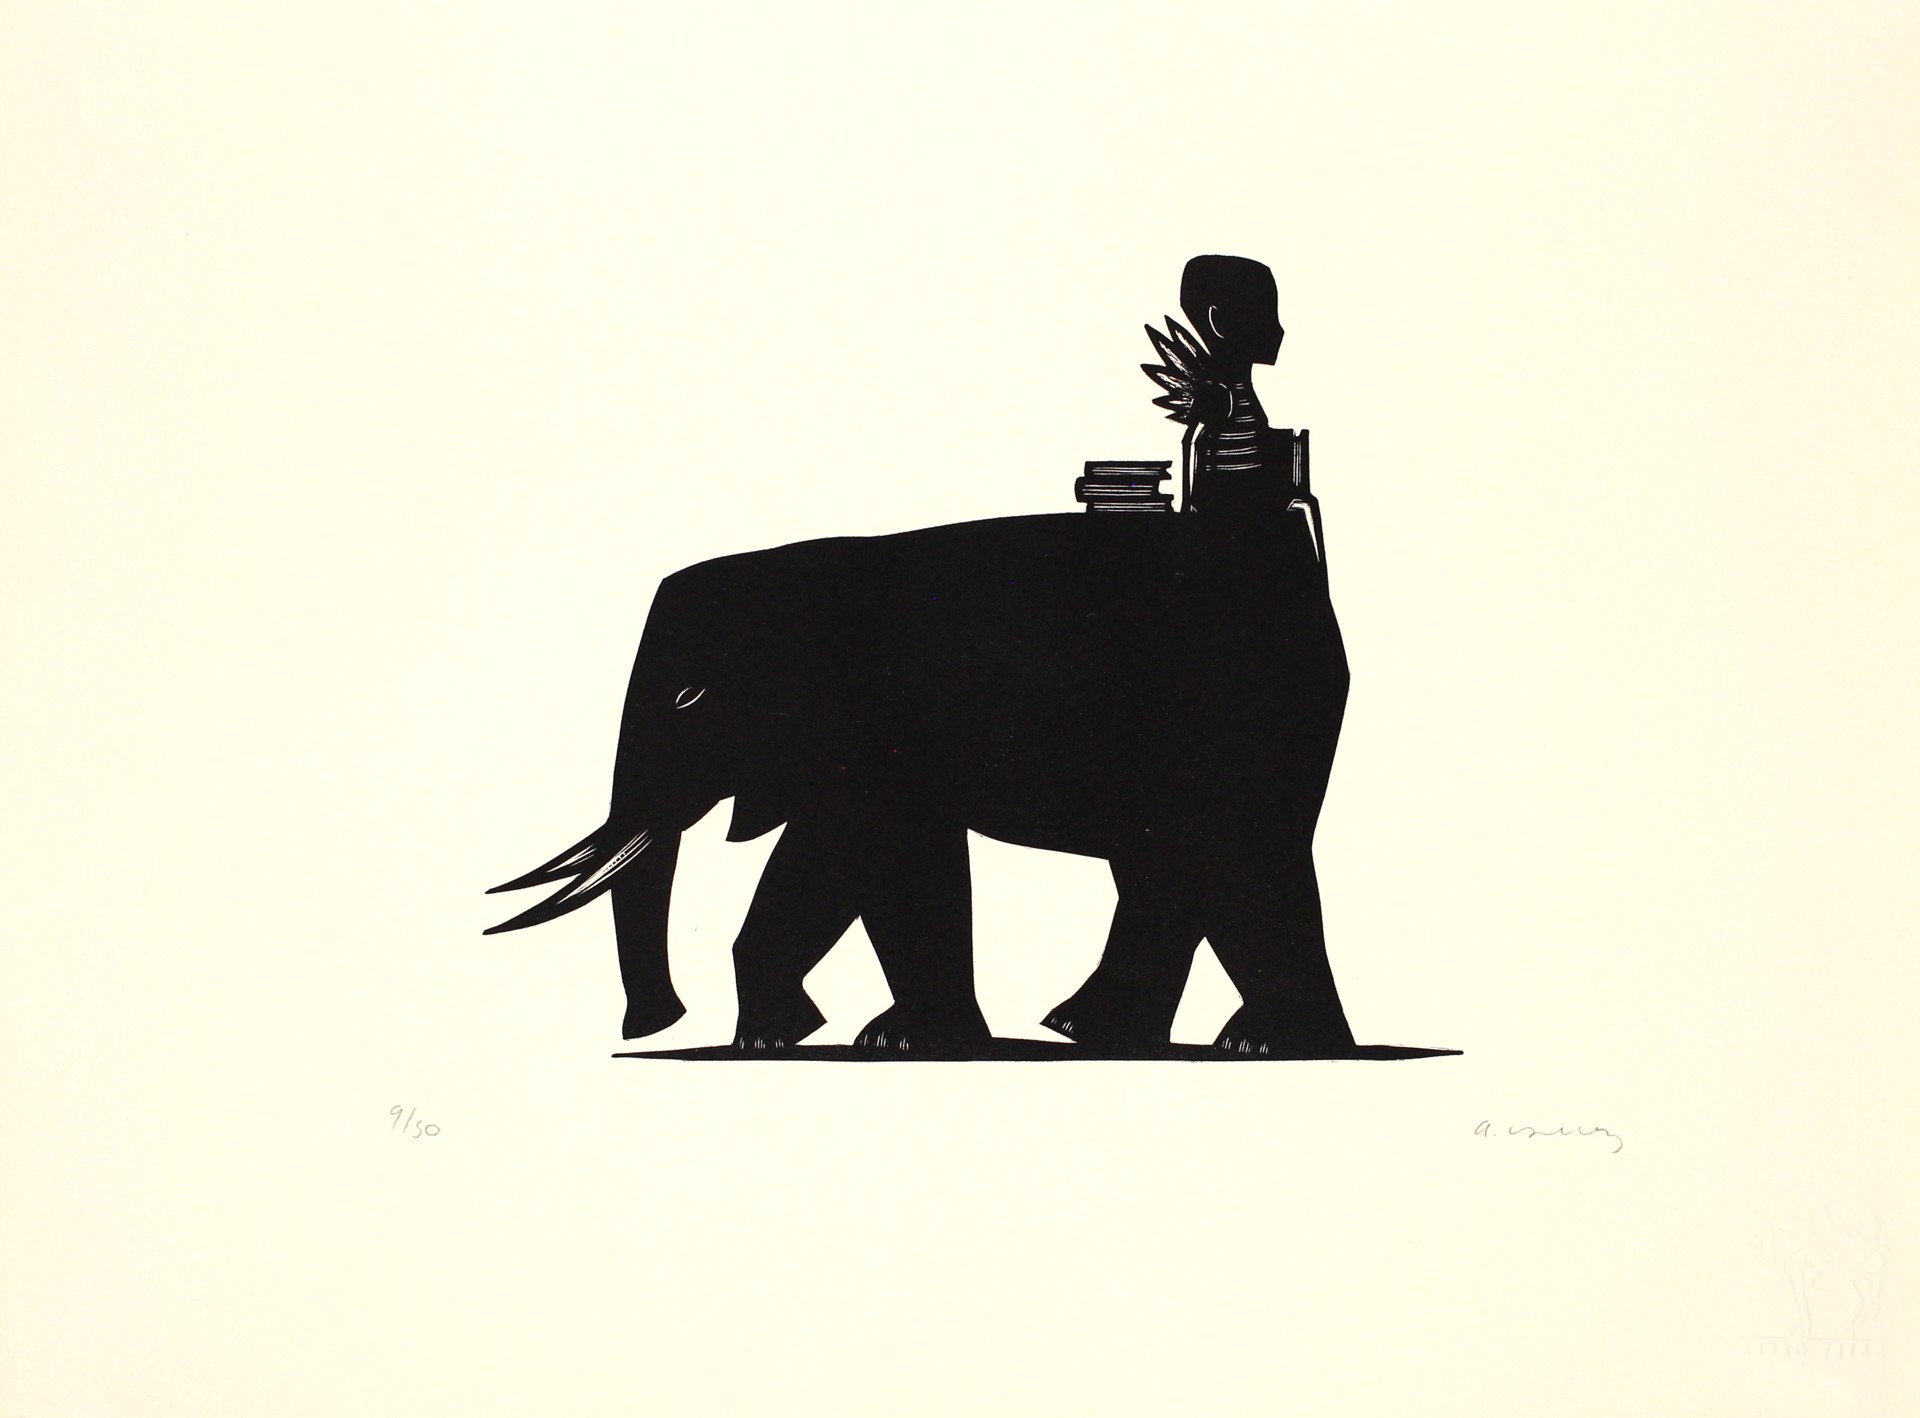 Jinete de Elefante by Alberto Cruz